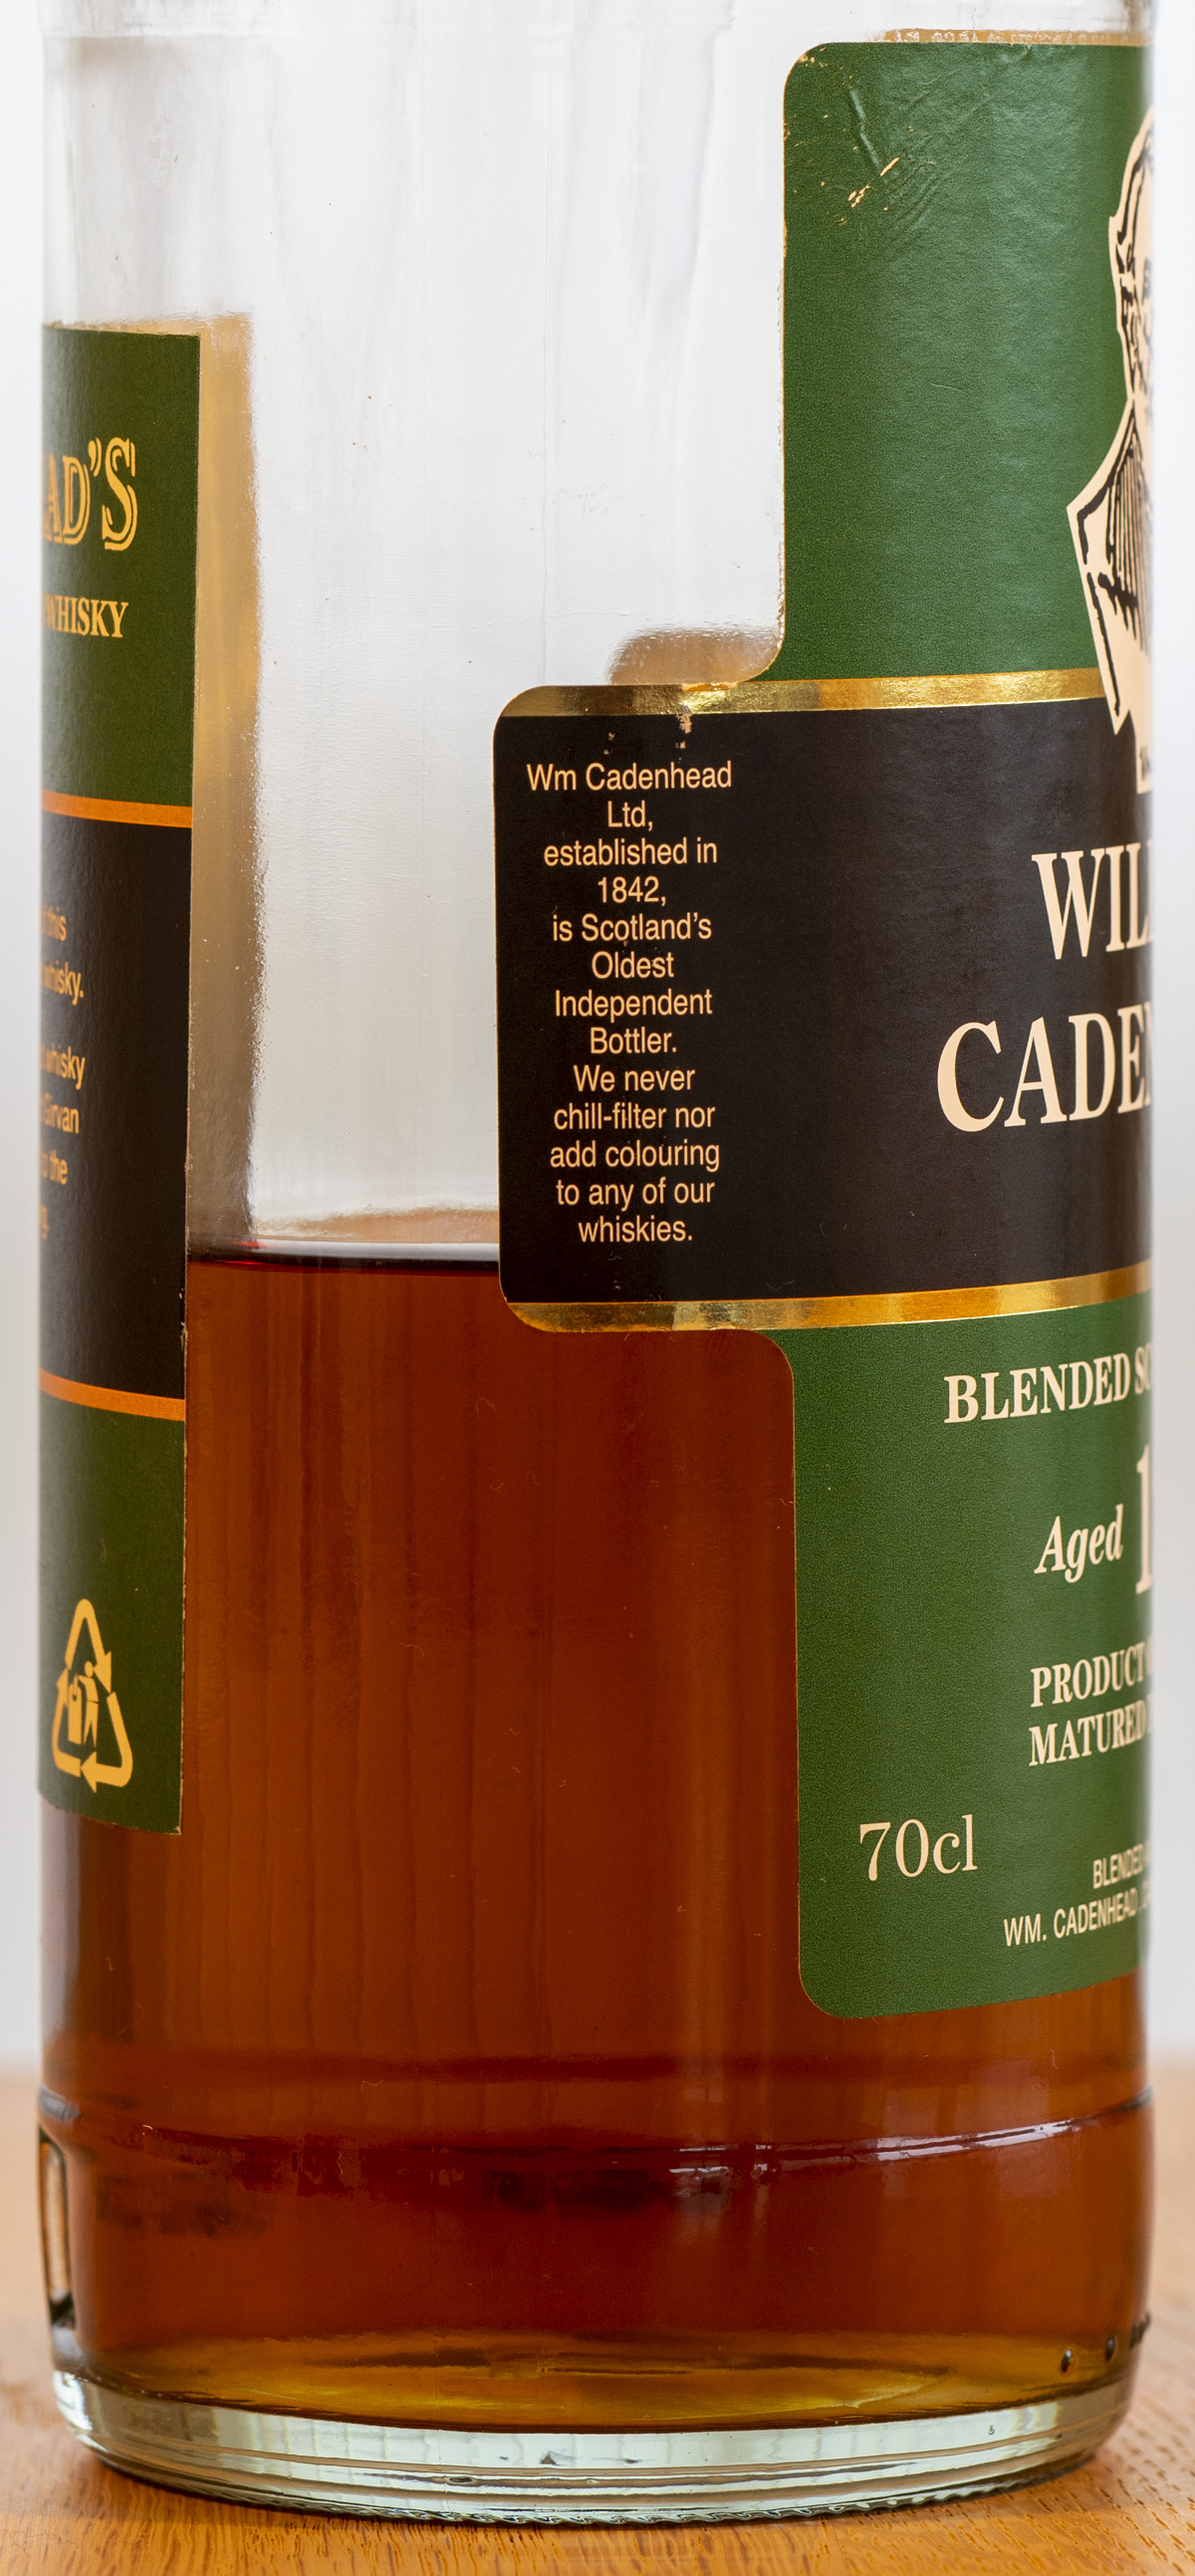 Billede: PHC_3874 - William Cadenhead Blended Scotch Whisky 12y - left side.jpg